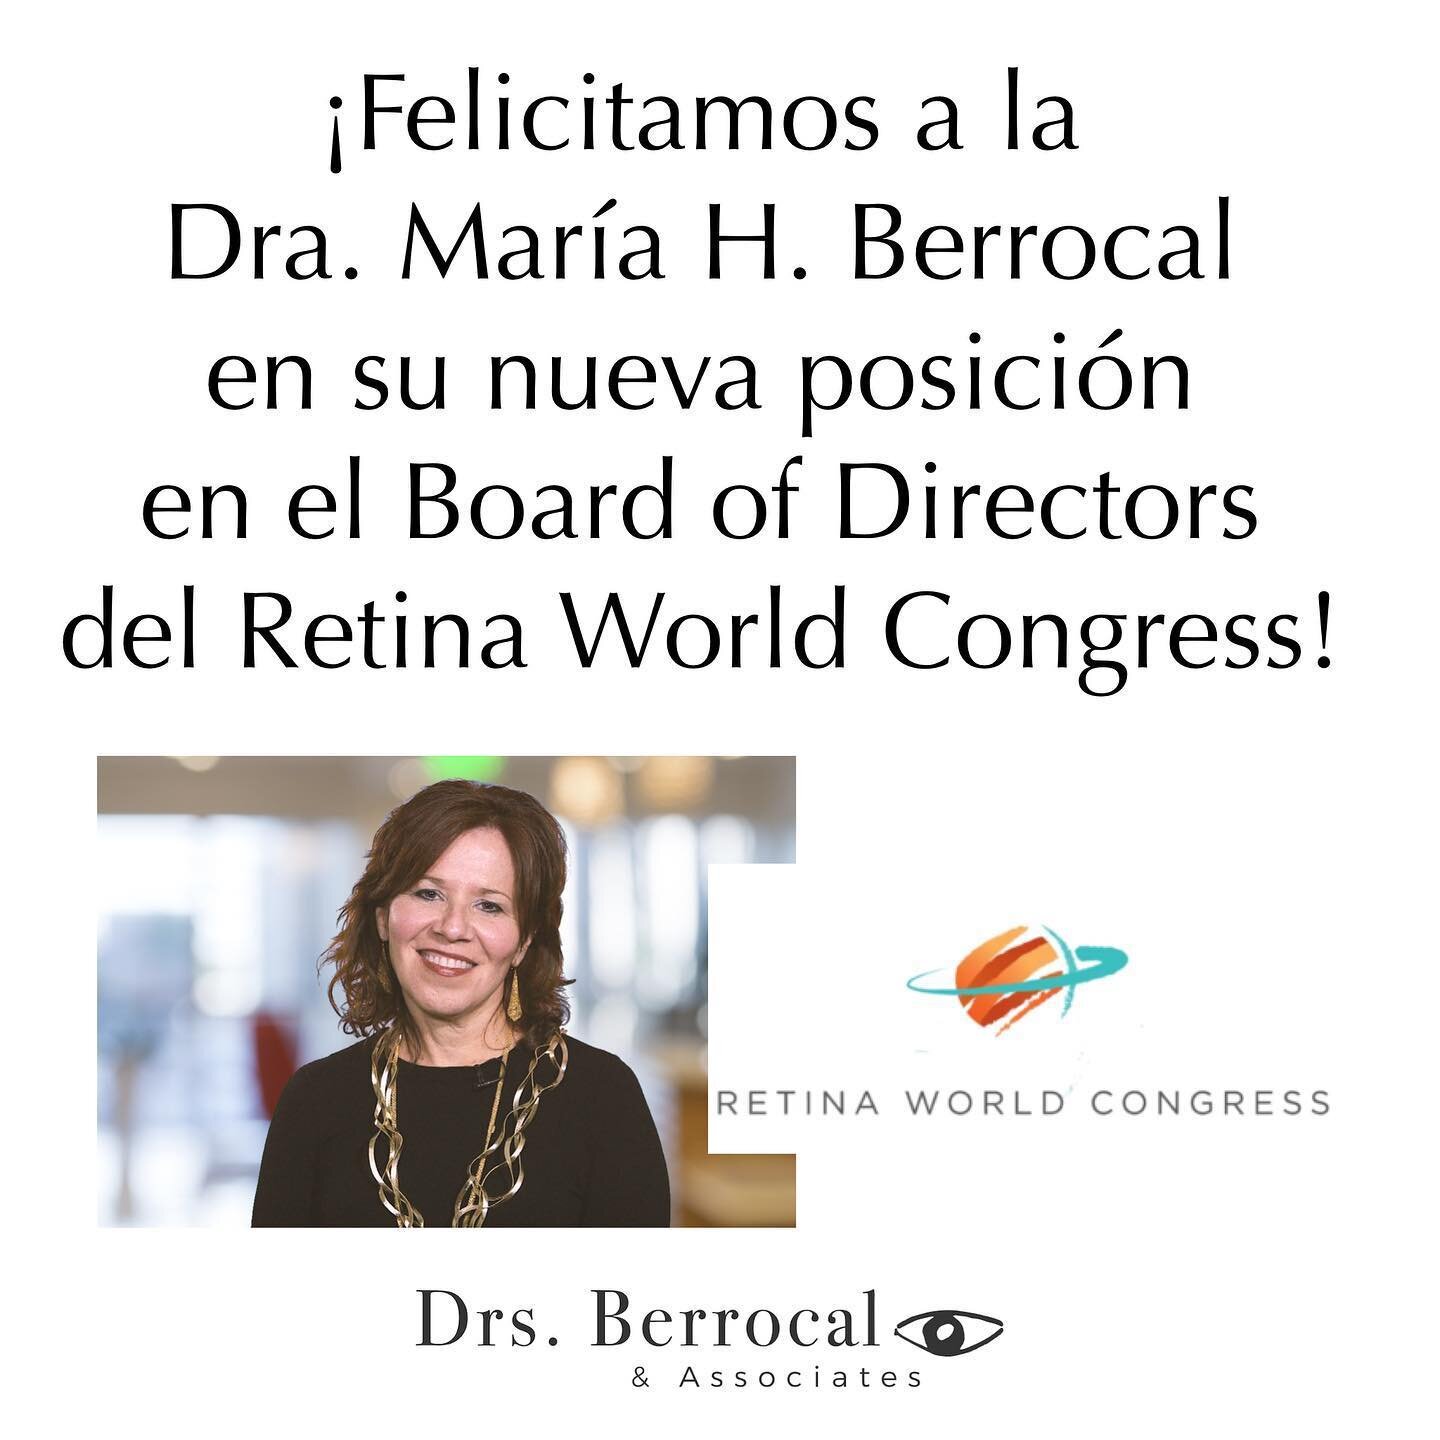 Hoy estamos orgullosos de celebrar a nuestra querida Dra. Berrocal, que oficialmente es parte de la junta de directores del Retina World Congress! 🎉 #orgullo #drsberrocal #retina #retinaworldcongress #retiniloga #puertorico #65years #retinaspecialis